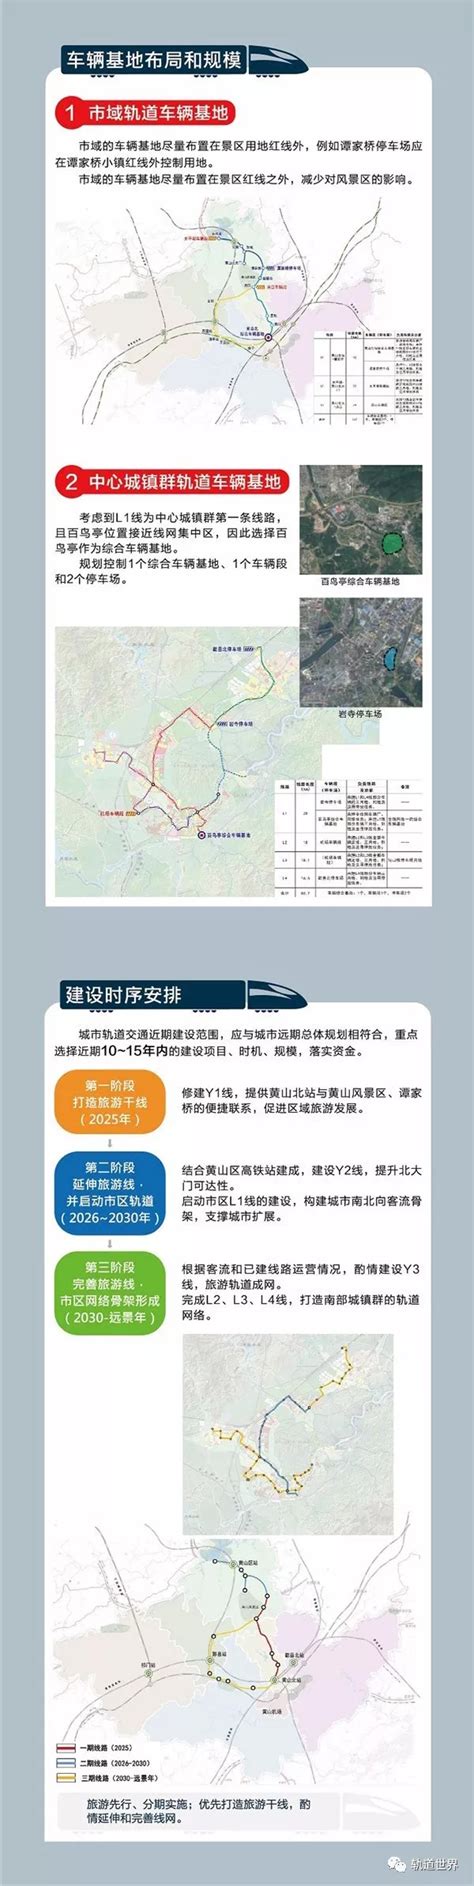 黄山市铁路枢纽规划总图及内容概述公布,还将新建4条铁路-黄山搜狐焦点